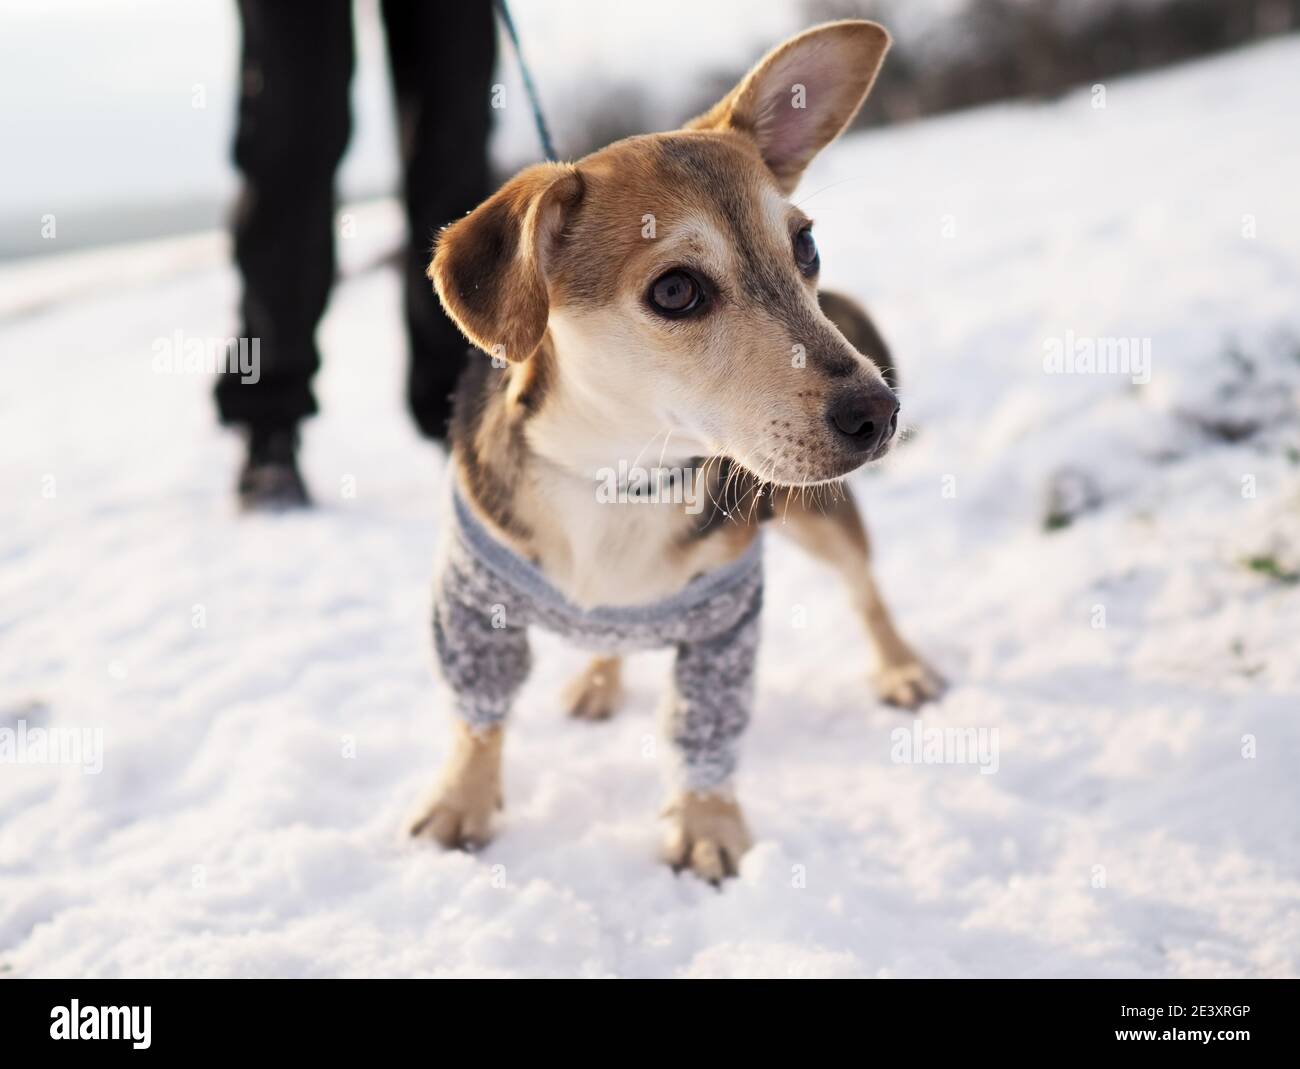 promenez-vous dans la neige en hiver avec le petit chien dans des vêtements en laine Banque D'Images